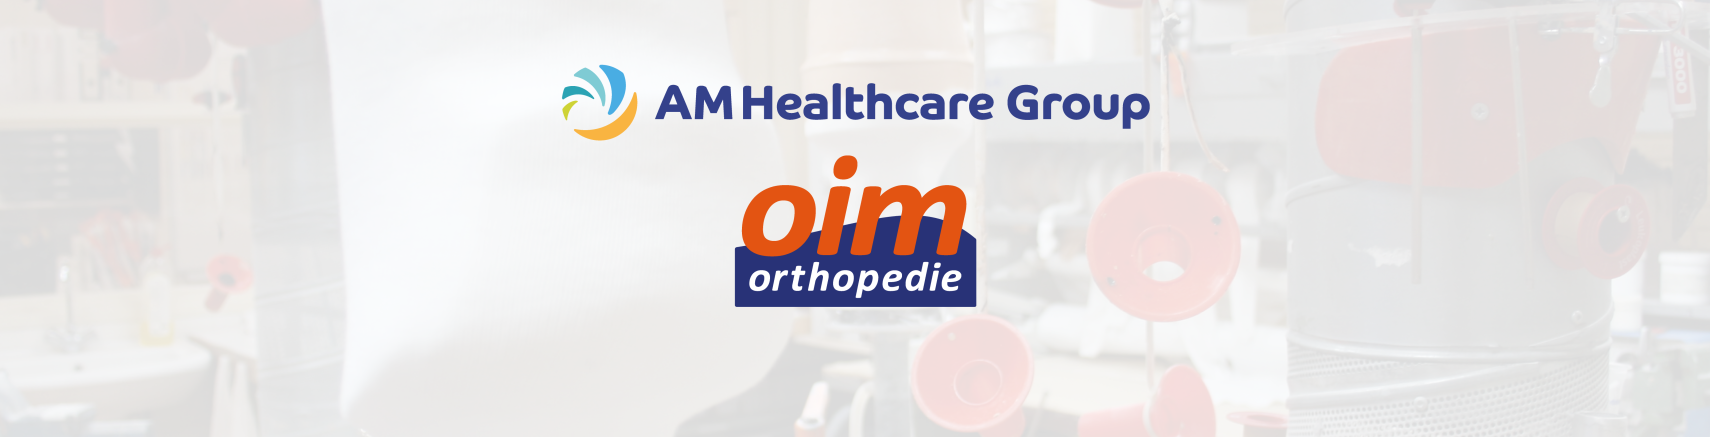 OIM Orthopedie wordt onderdeel van AM Healthcare Group